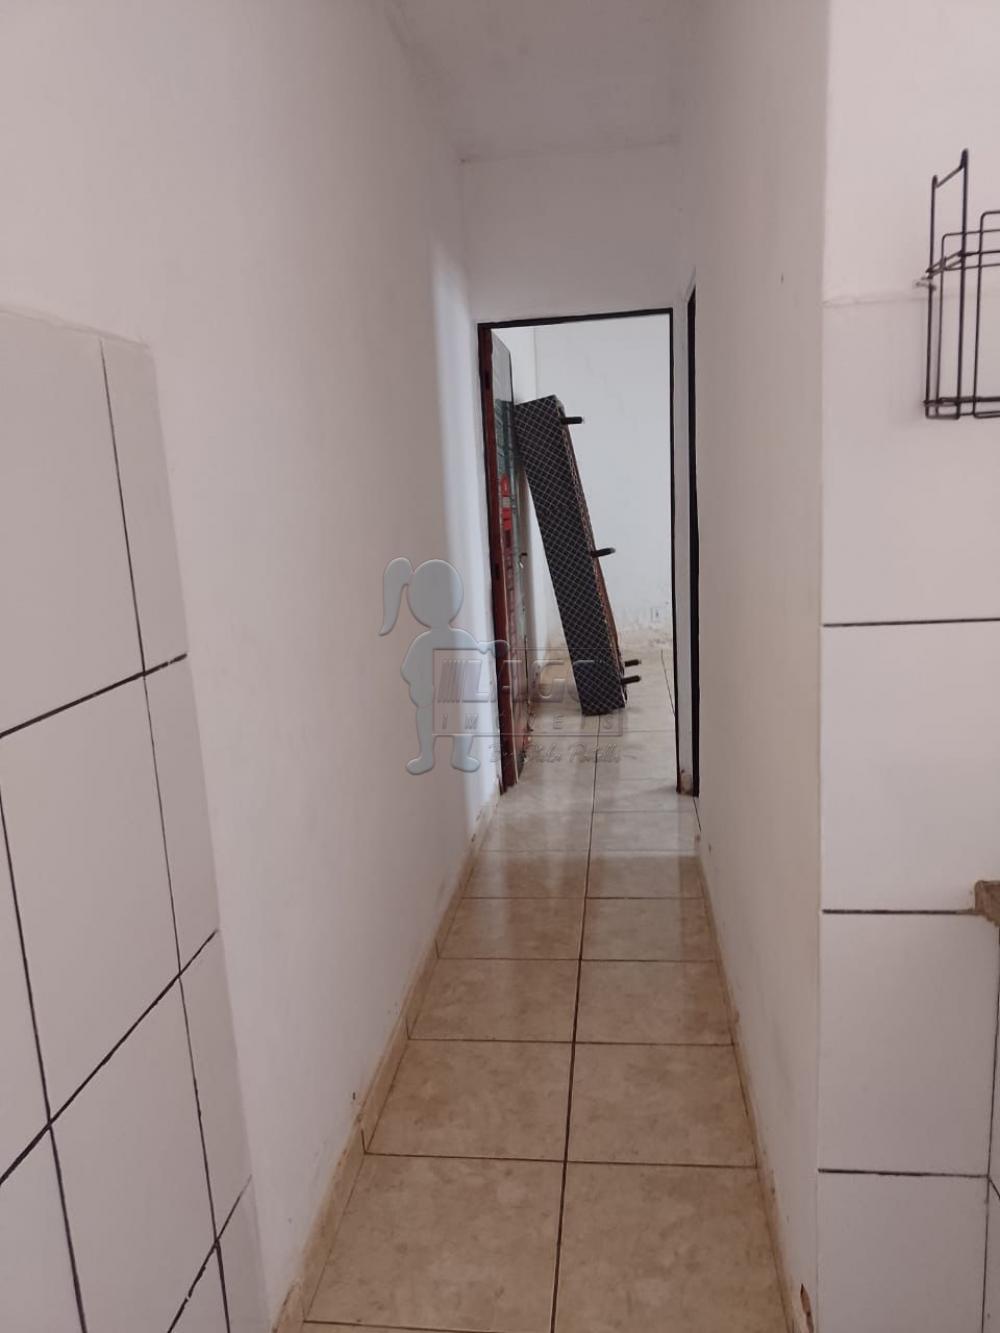 Comprar Casa / Padrão em Ribeirão Preto R$ 250.000,00 - Foto 17